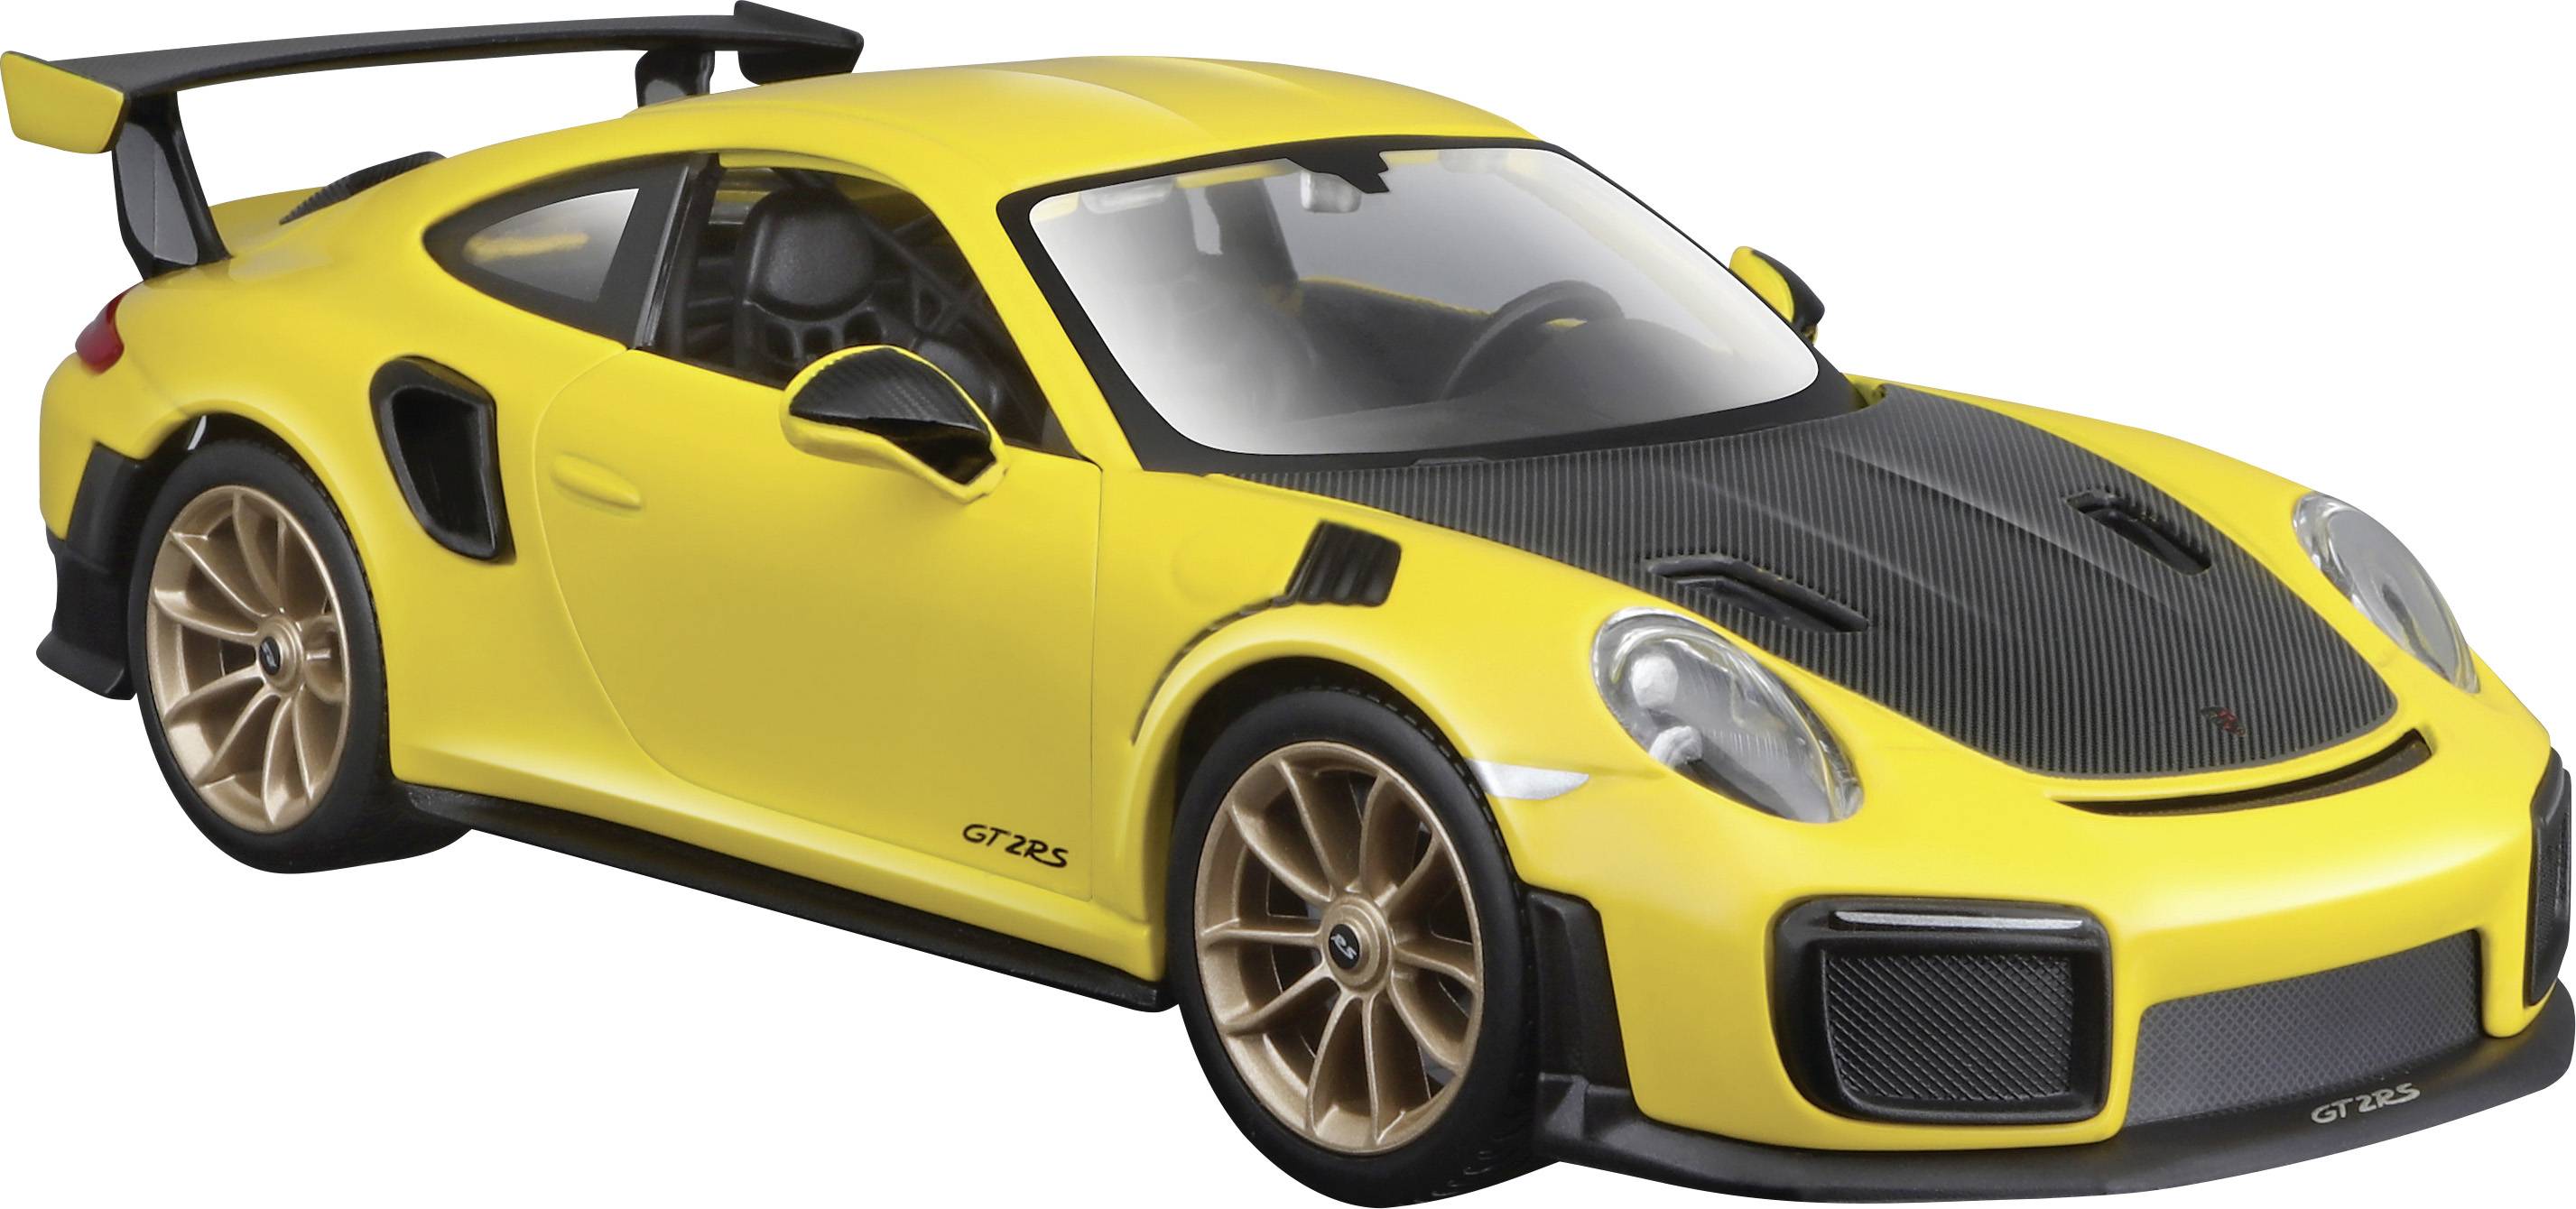 Model Samochodu Maisto Porsche 911 Gt2 Rs | Zamów W Conrad.pl